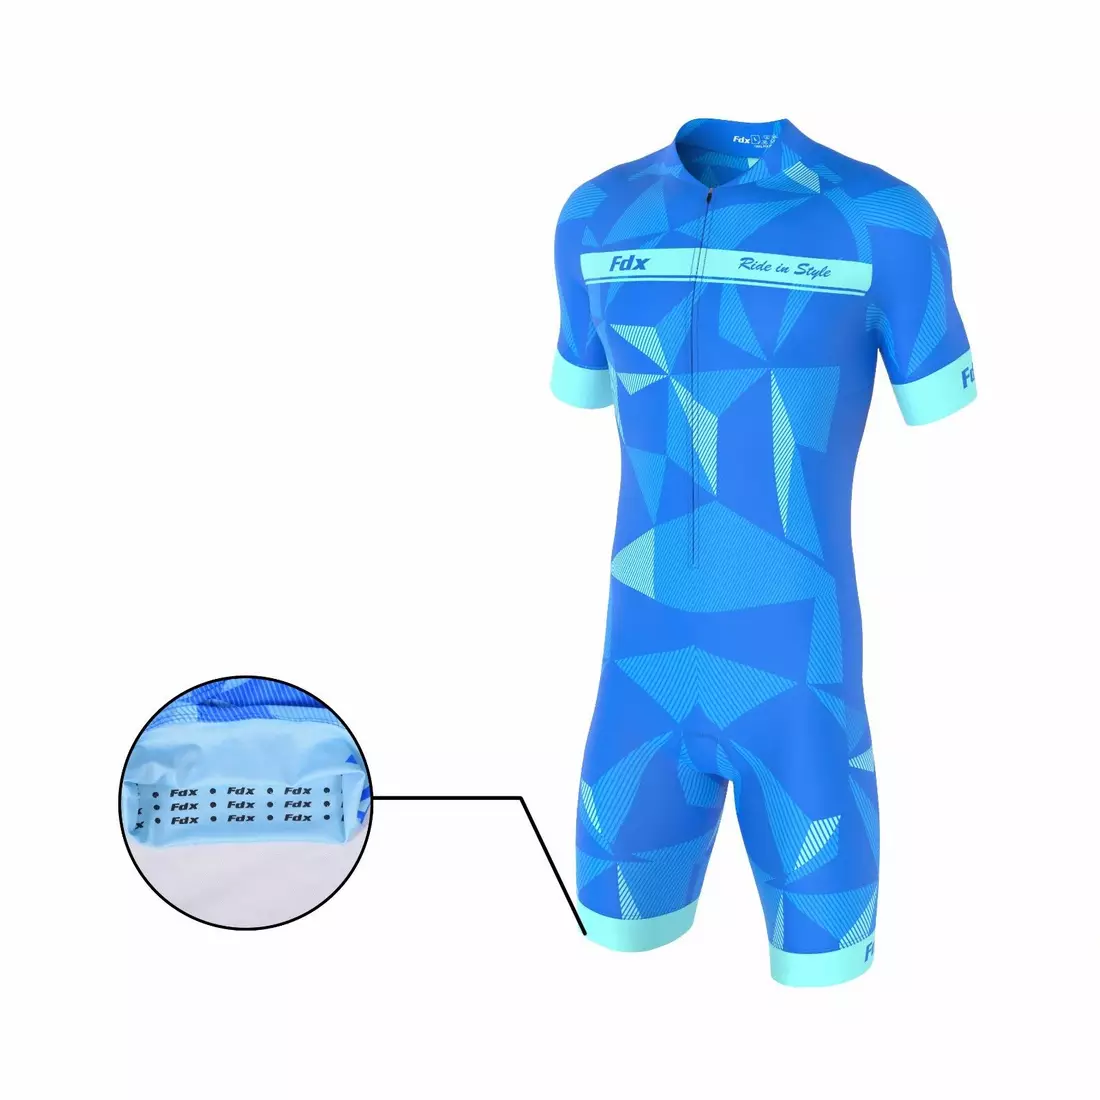 FDX 1270 one-piece cycling suit/suit, blue